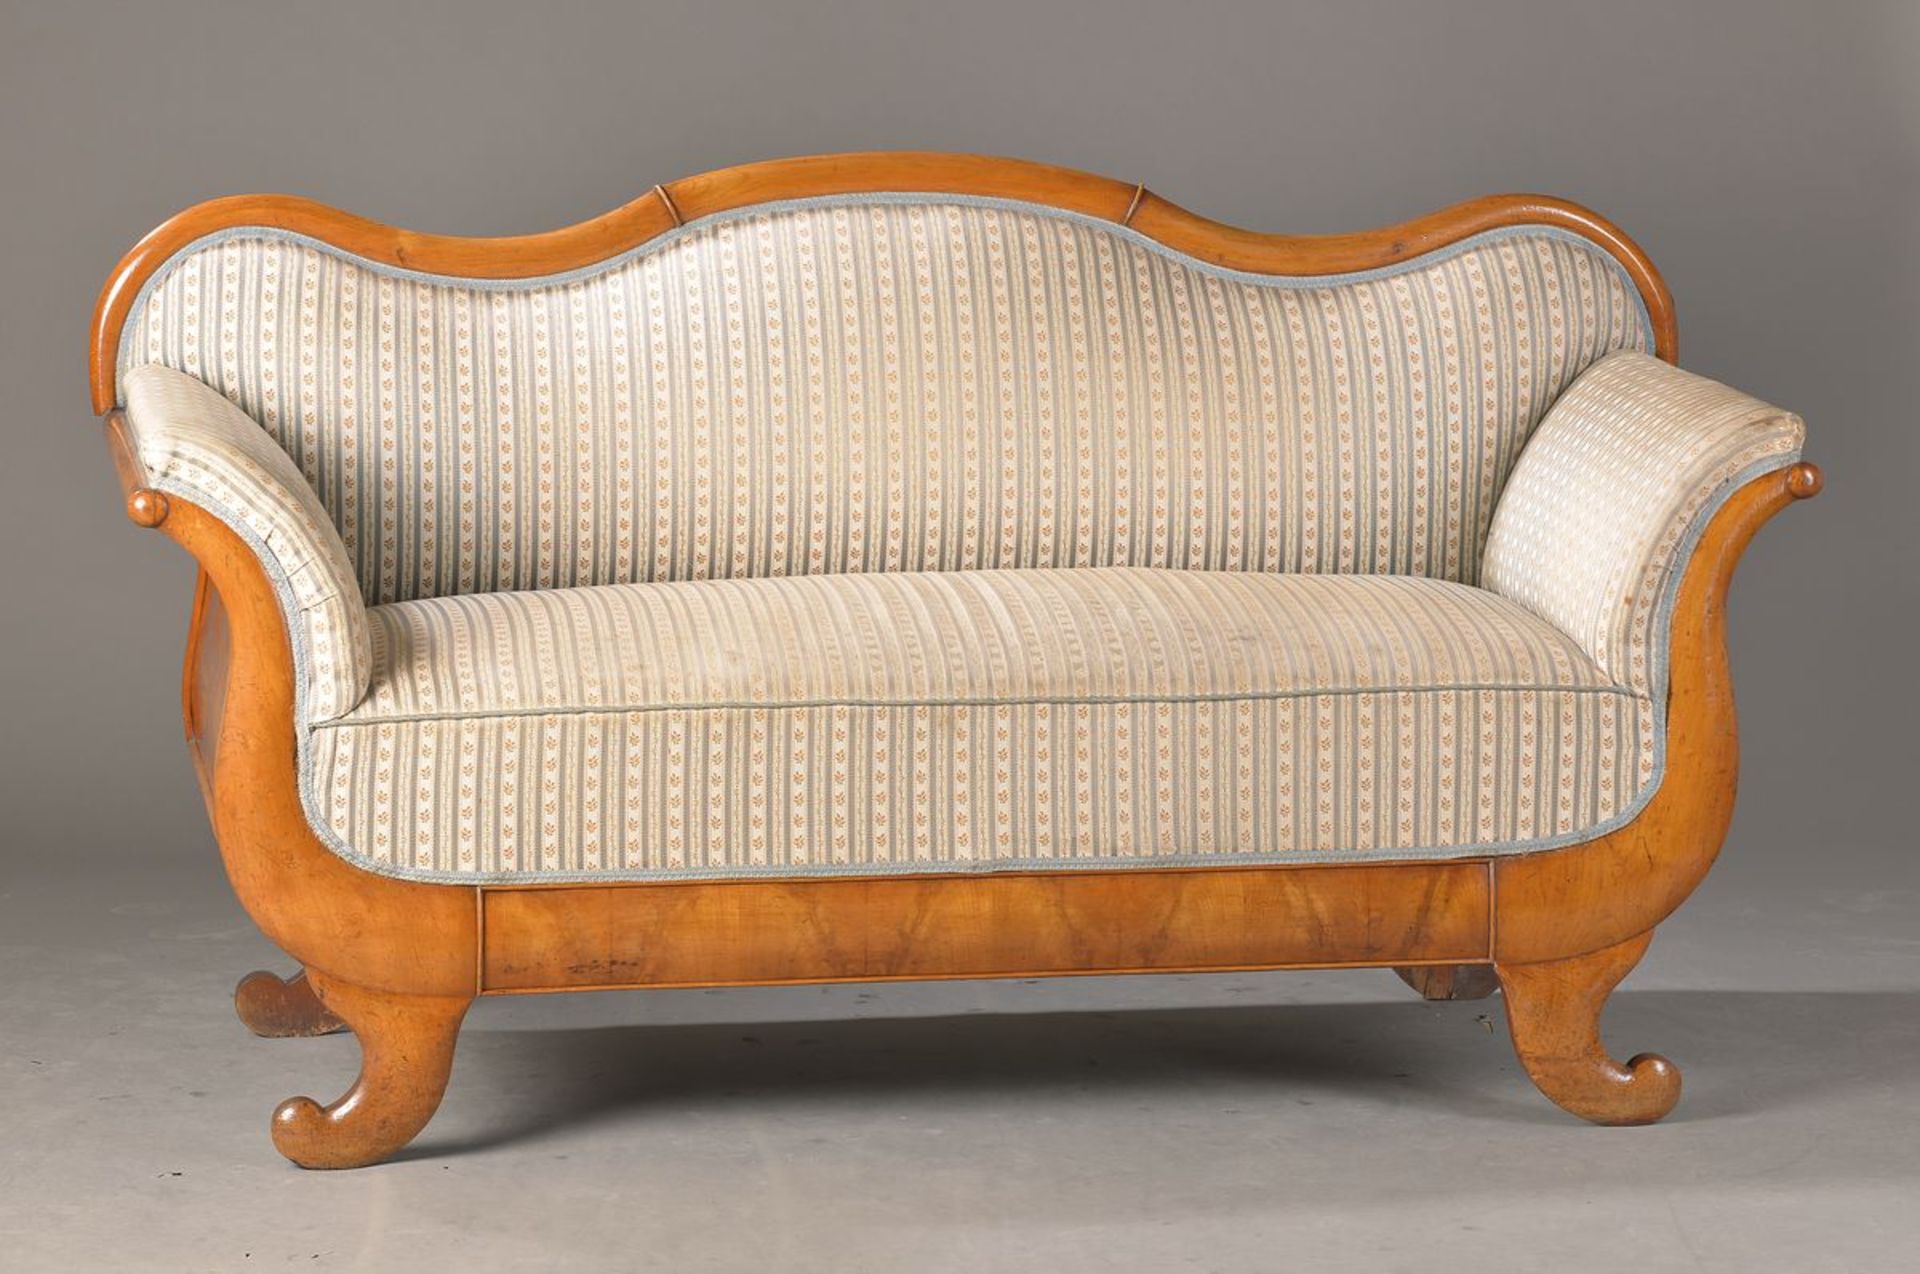 Kleines Biedermeier Sofa, süddeutsch, um 1830/35, Kirschbaum furniert und massiv, Polster in